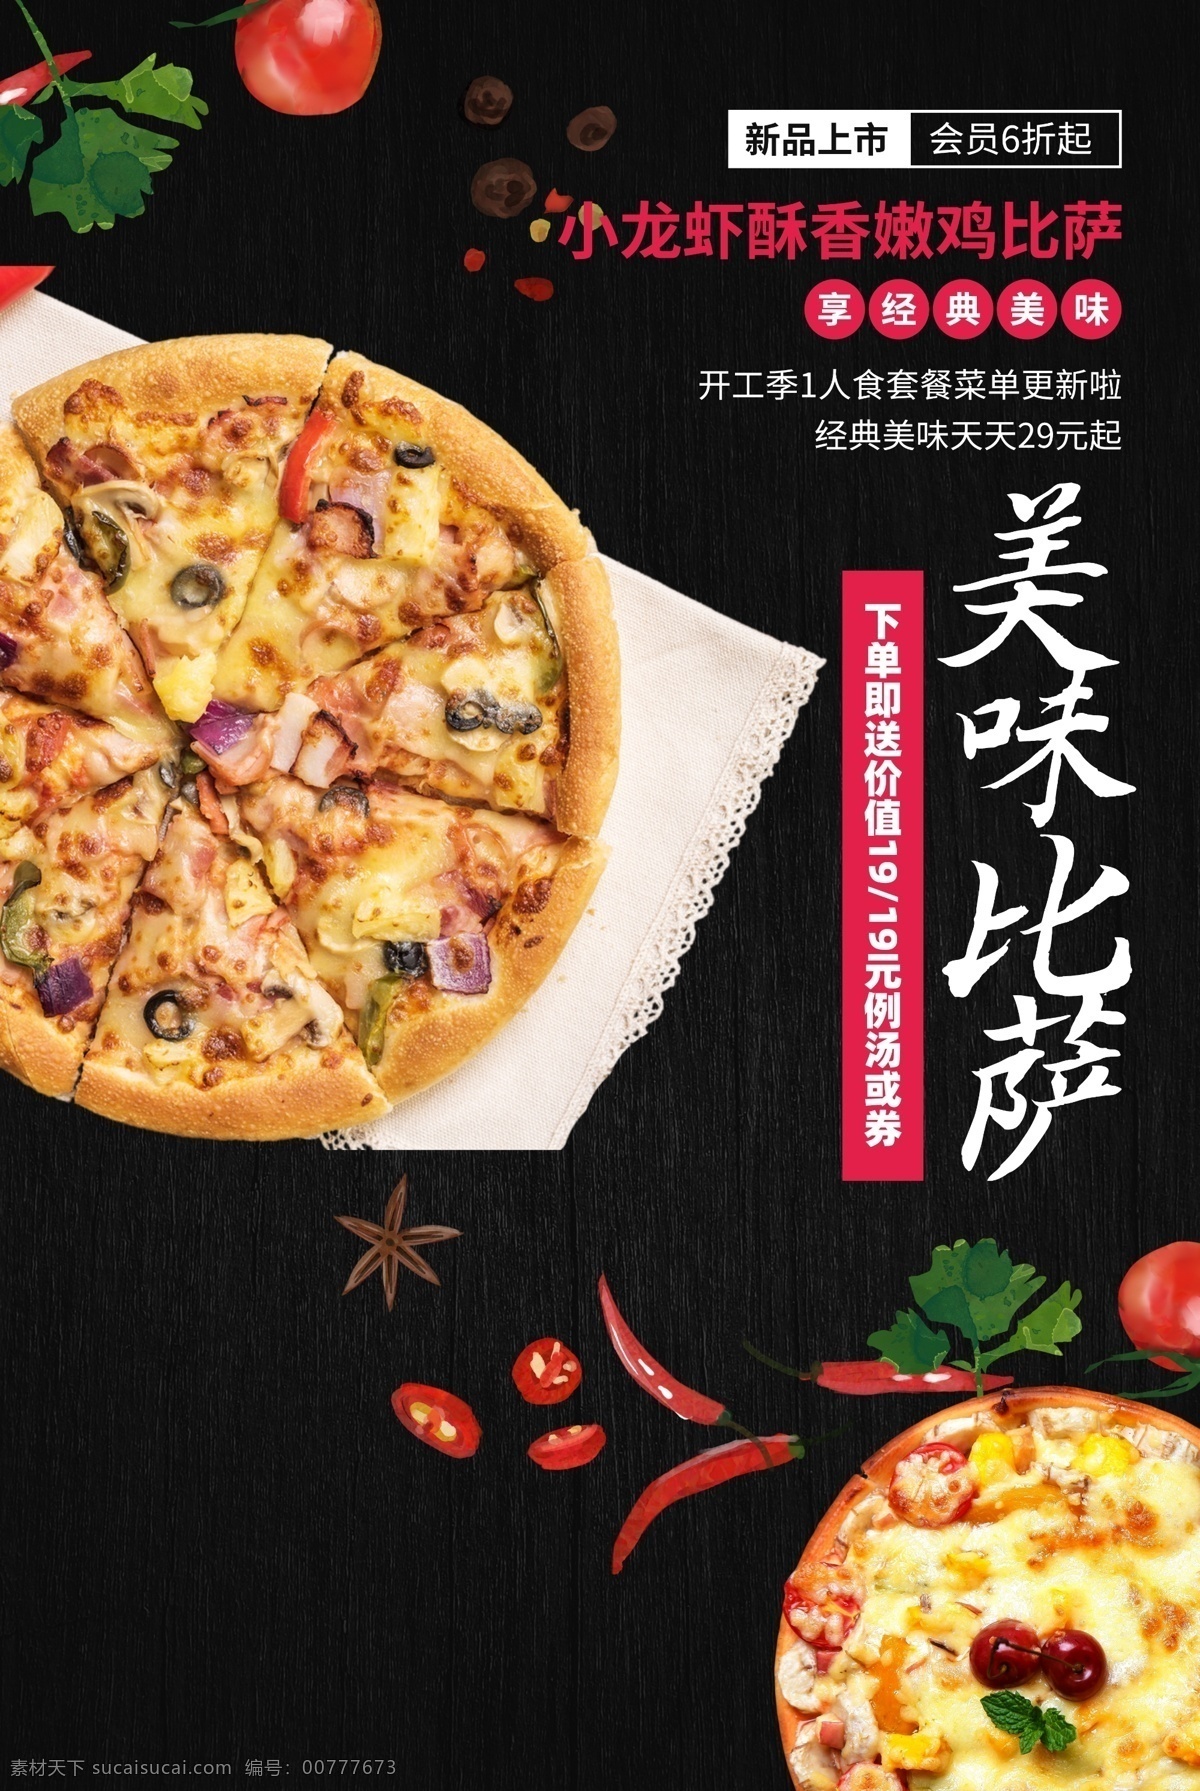 美味 披萨 美食 活动 宣传海报 素材图片 美味披萨 宣传 海报 餐饮美食 类